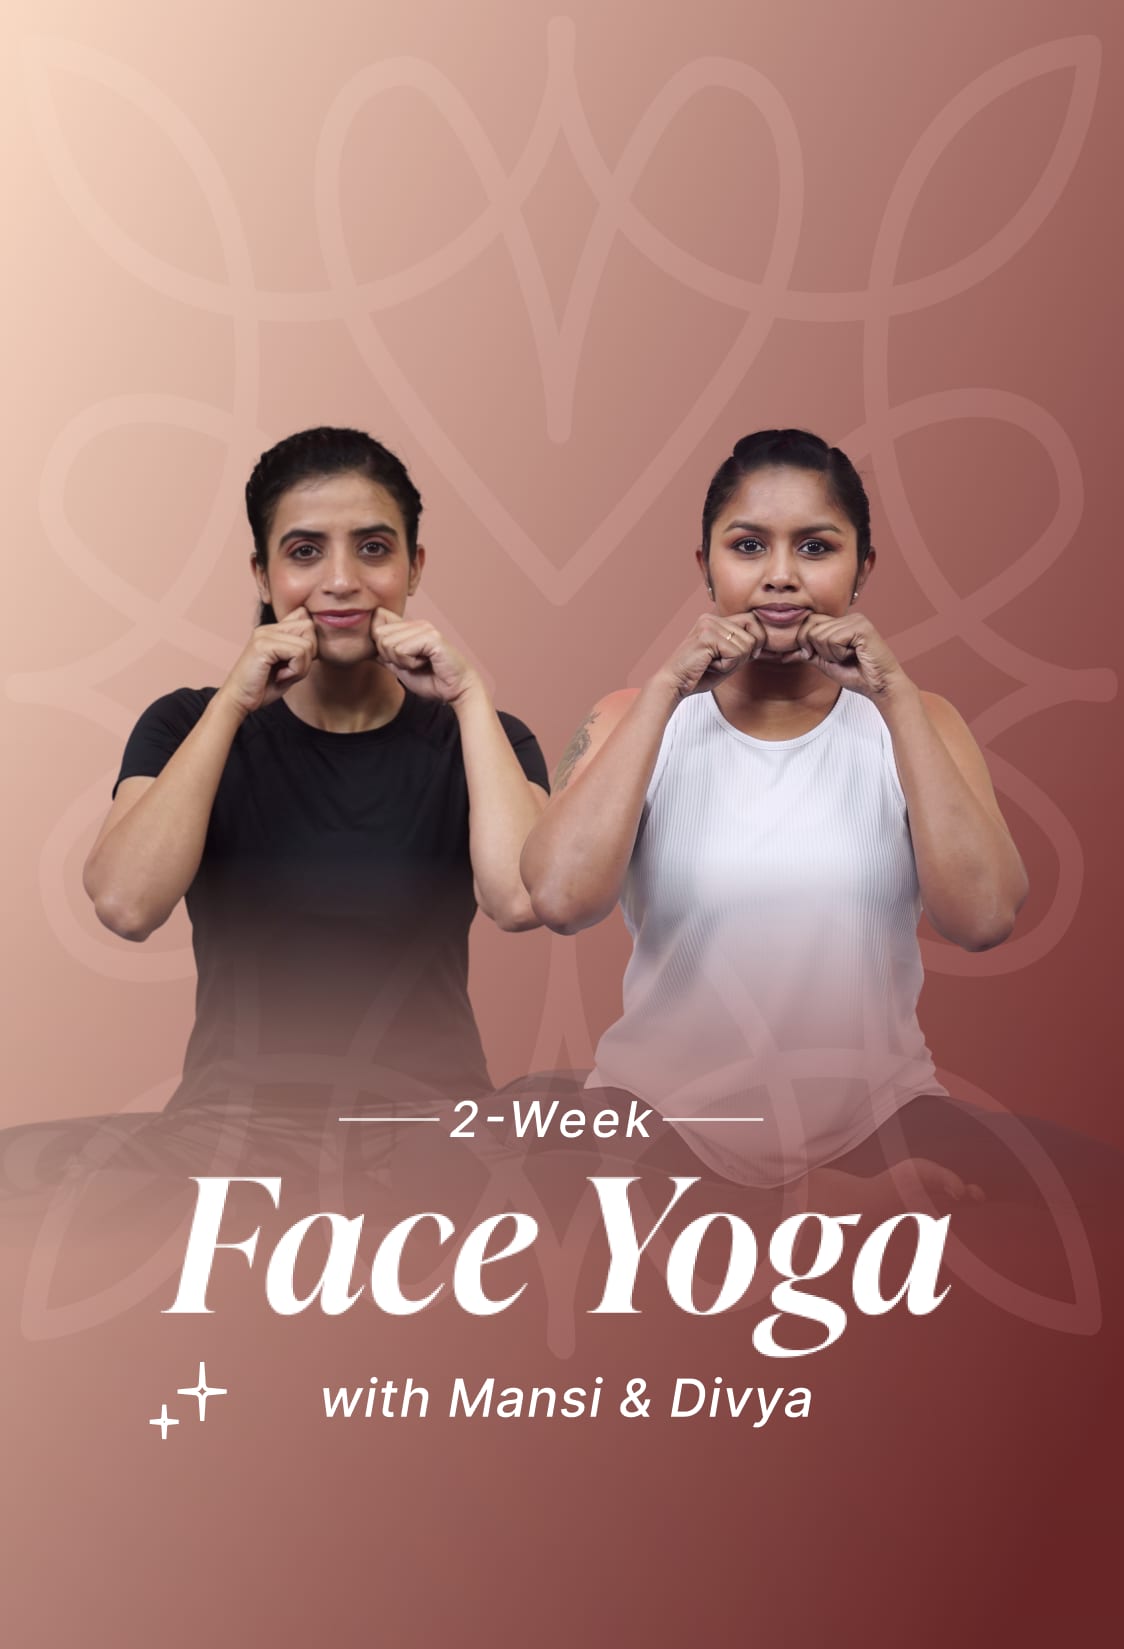 2-Week Face Yoga with Mansi & Divya